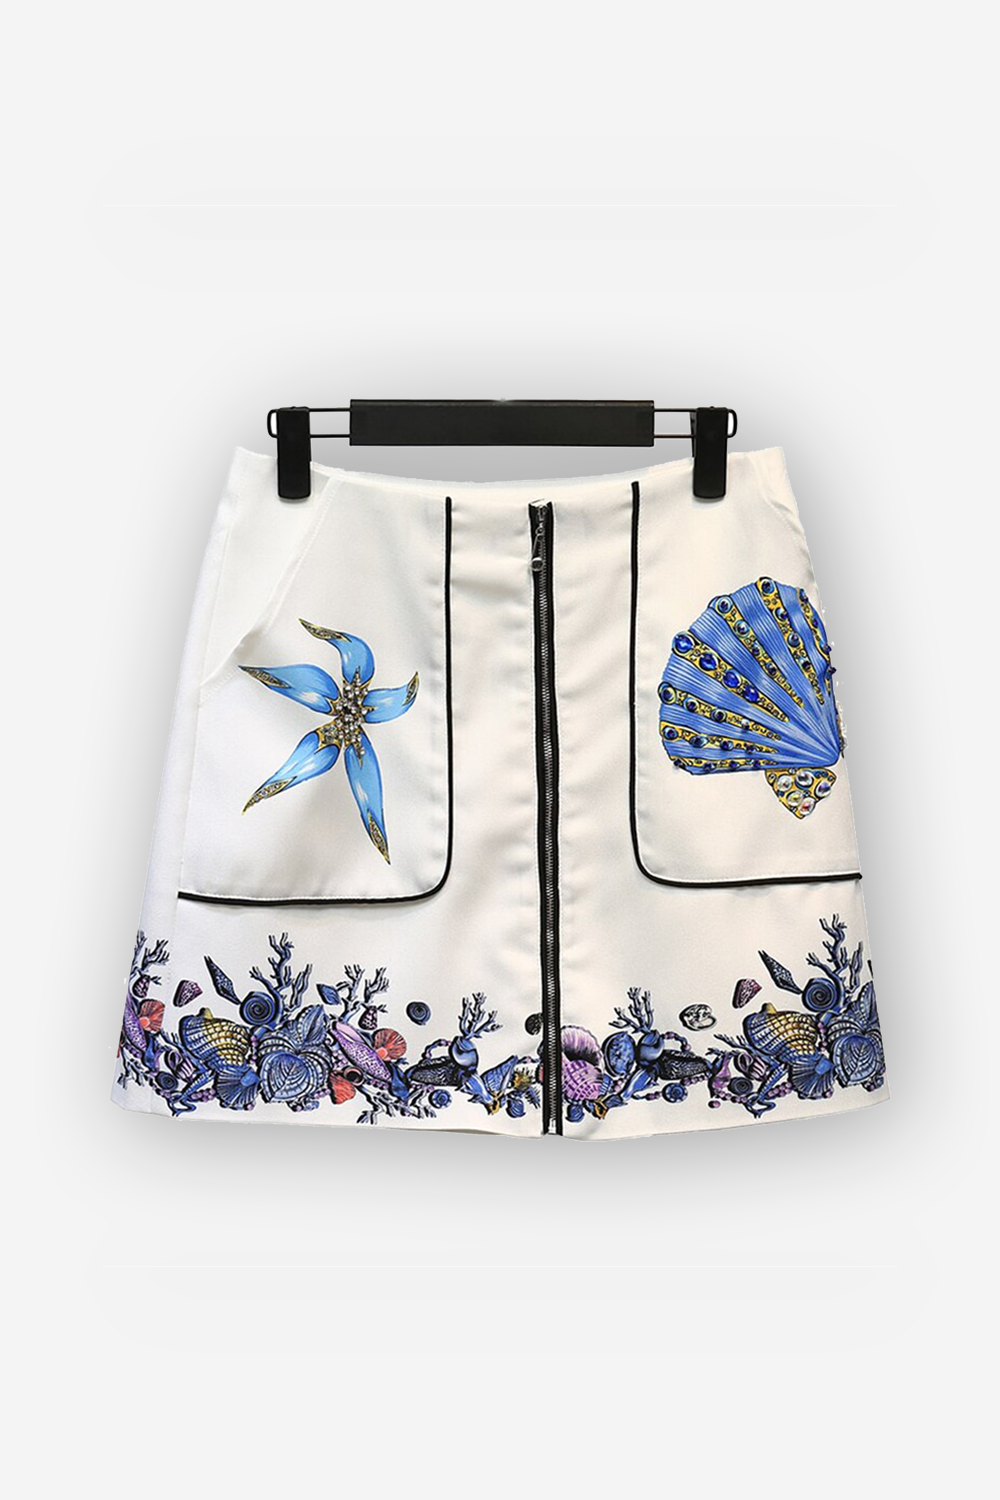 Clover Skirt Zipper & Pockets